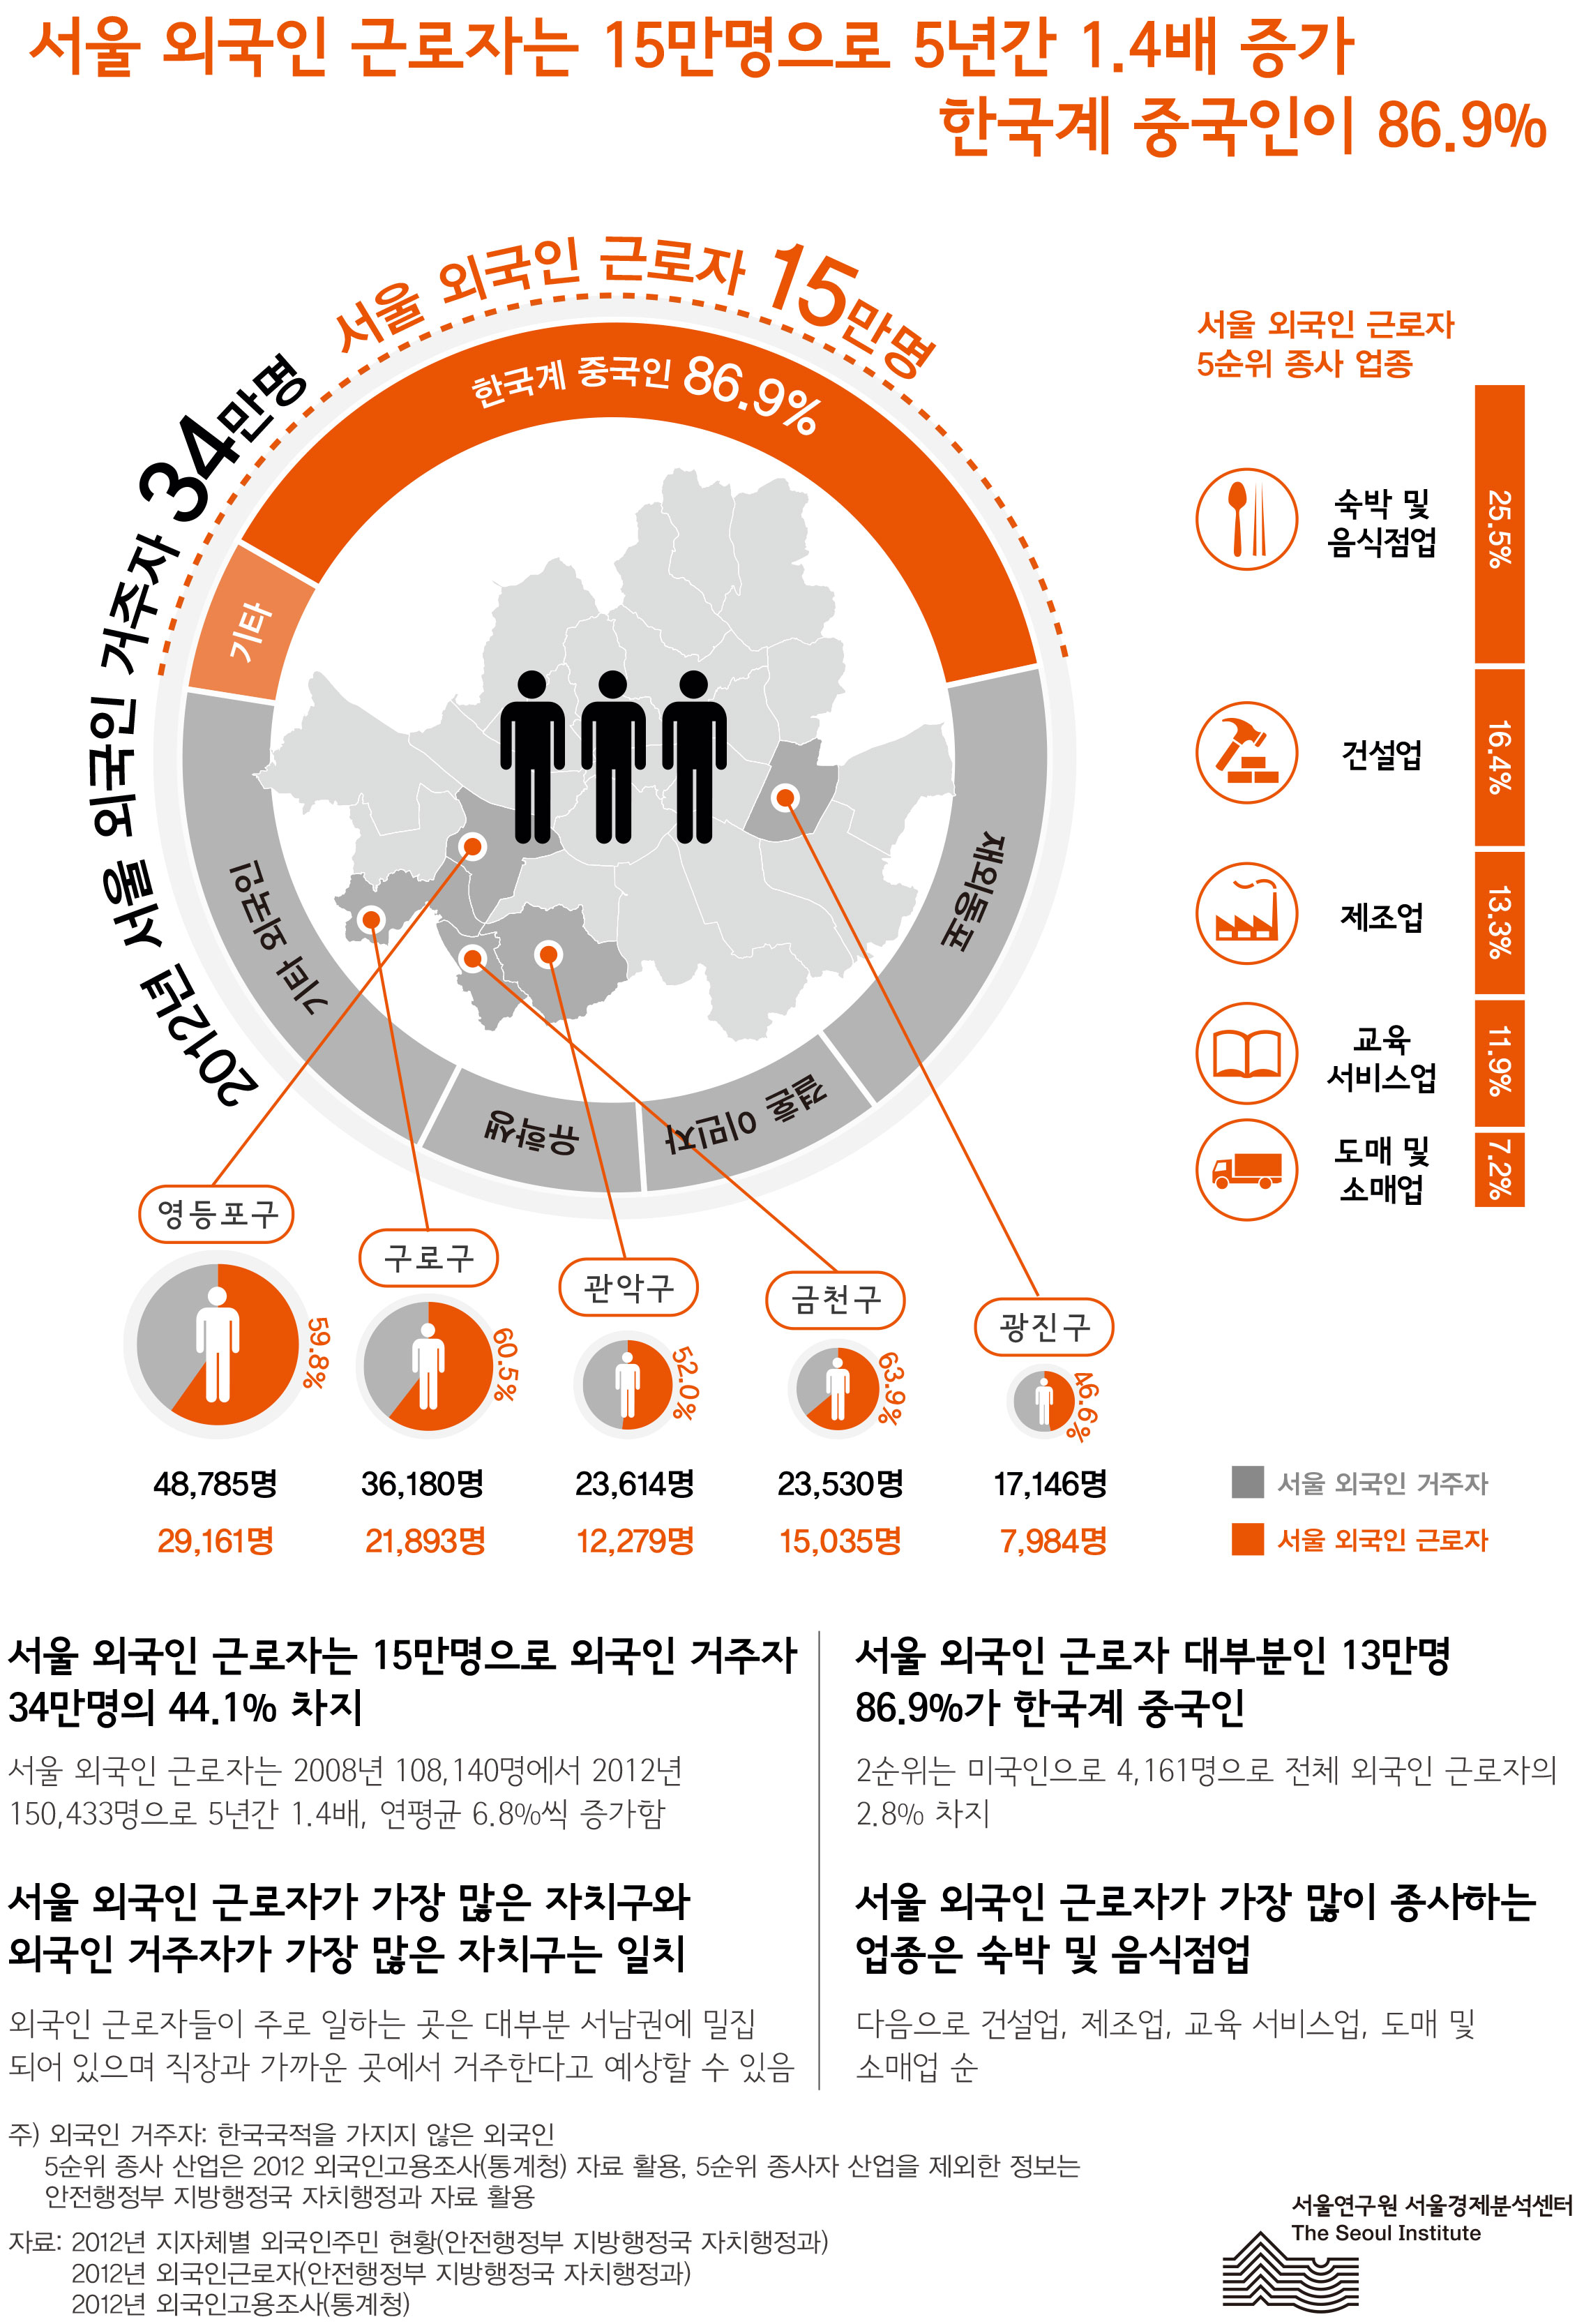 서울시 외국인 근로자 현황서울 서울인포그래픽스 제48호 2013년 8월 26일 외국인 근로자는 15만명으로 5년간 1.4배 증가, 한국계 중국인이 86.9%, 서울 외국인 근로자는 15만명으로 외국인 거주자 34만명의 44.1% 차지, 서울 외국인 근로자가 가장 많은 자치구와 외국인 거주자가 가장 많은 자치구는 일치함으로 정리될 수 있습니다. 인포그래픽으로 제공되는 그래픽은 하단에 표로 자세히 제공됩니다.